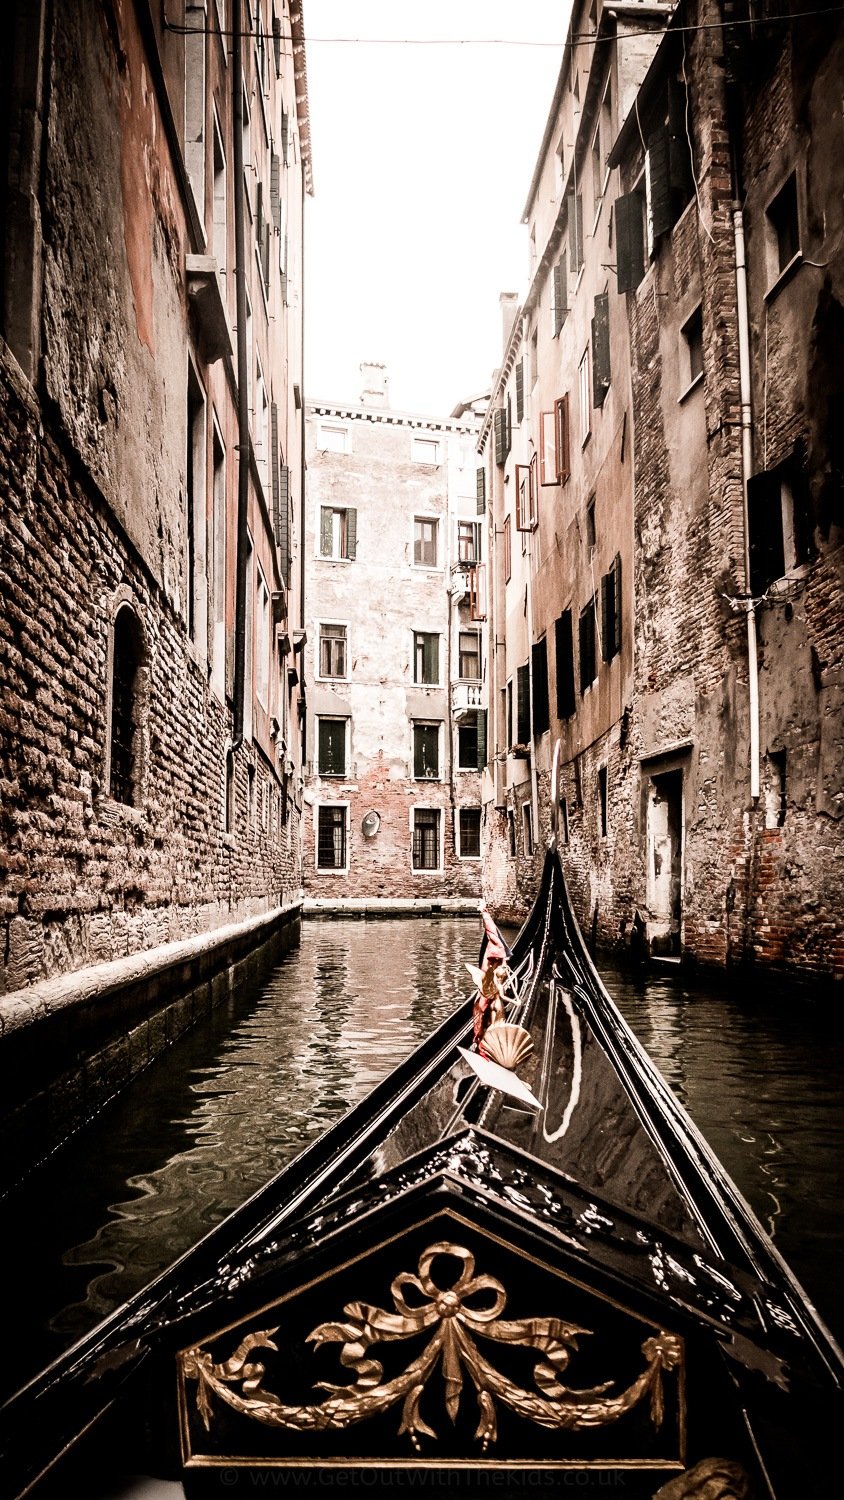 A gondola on a narrow canal